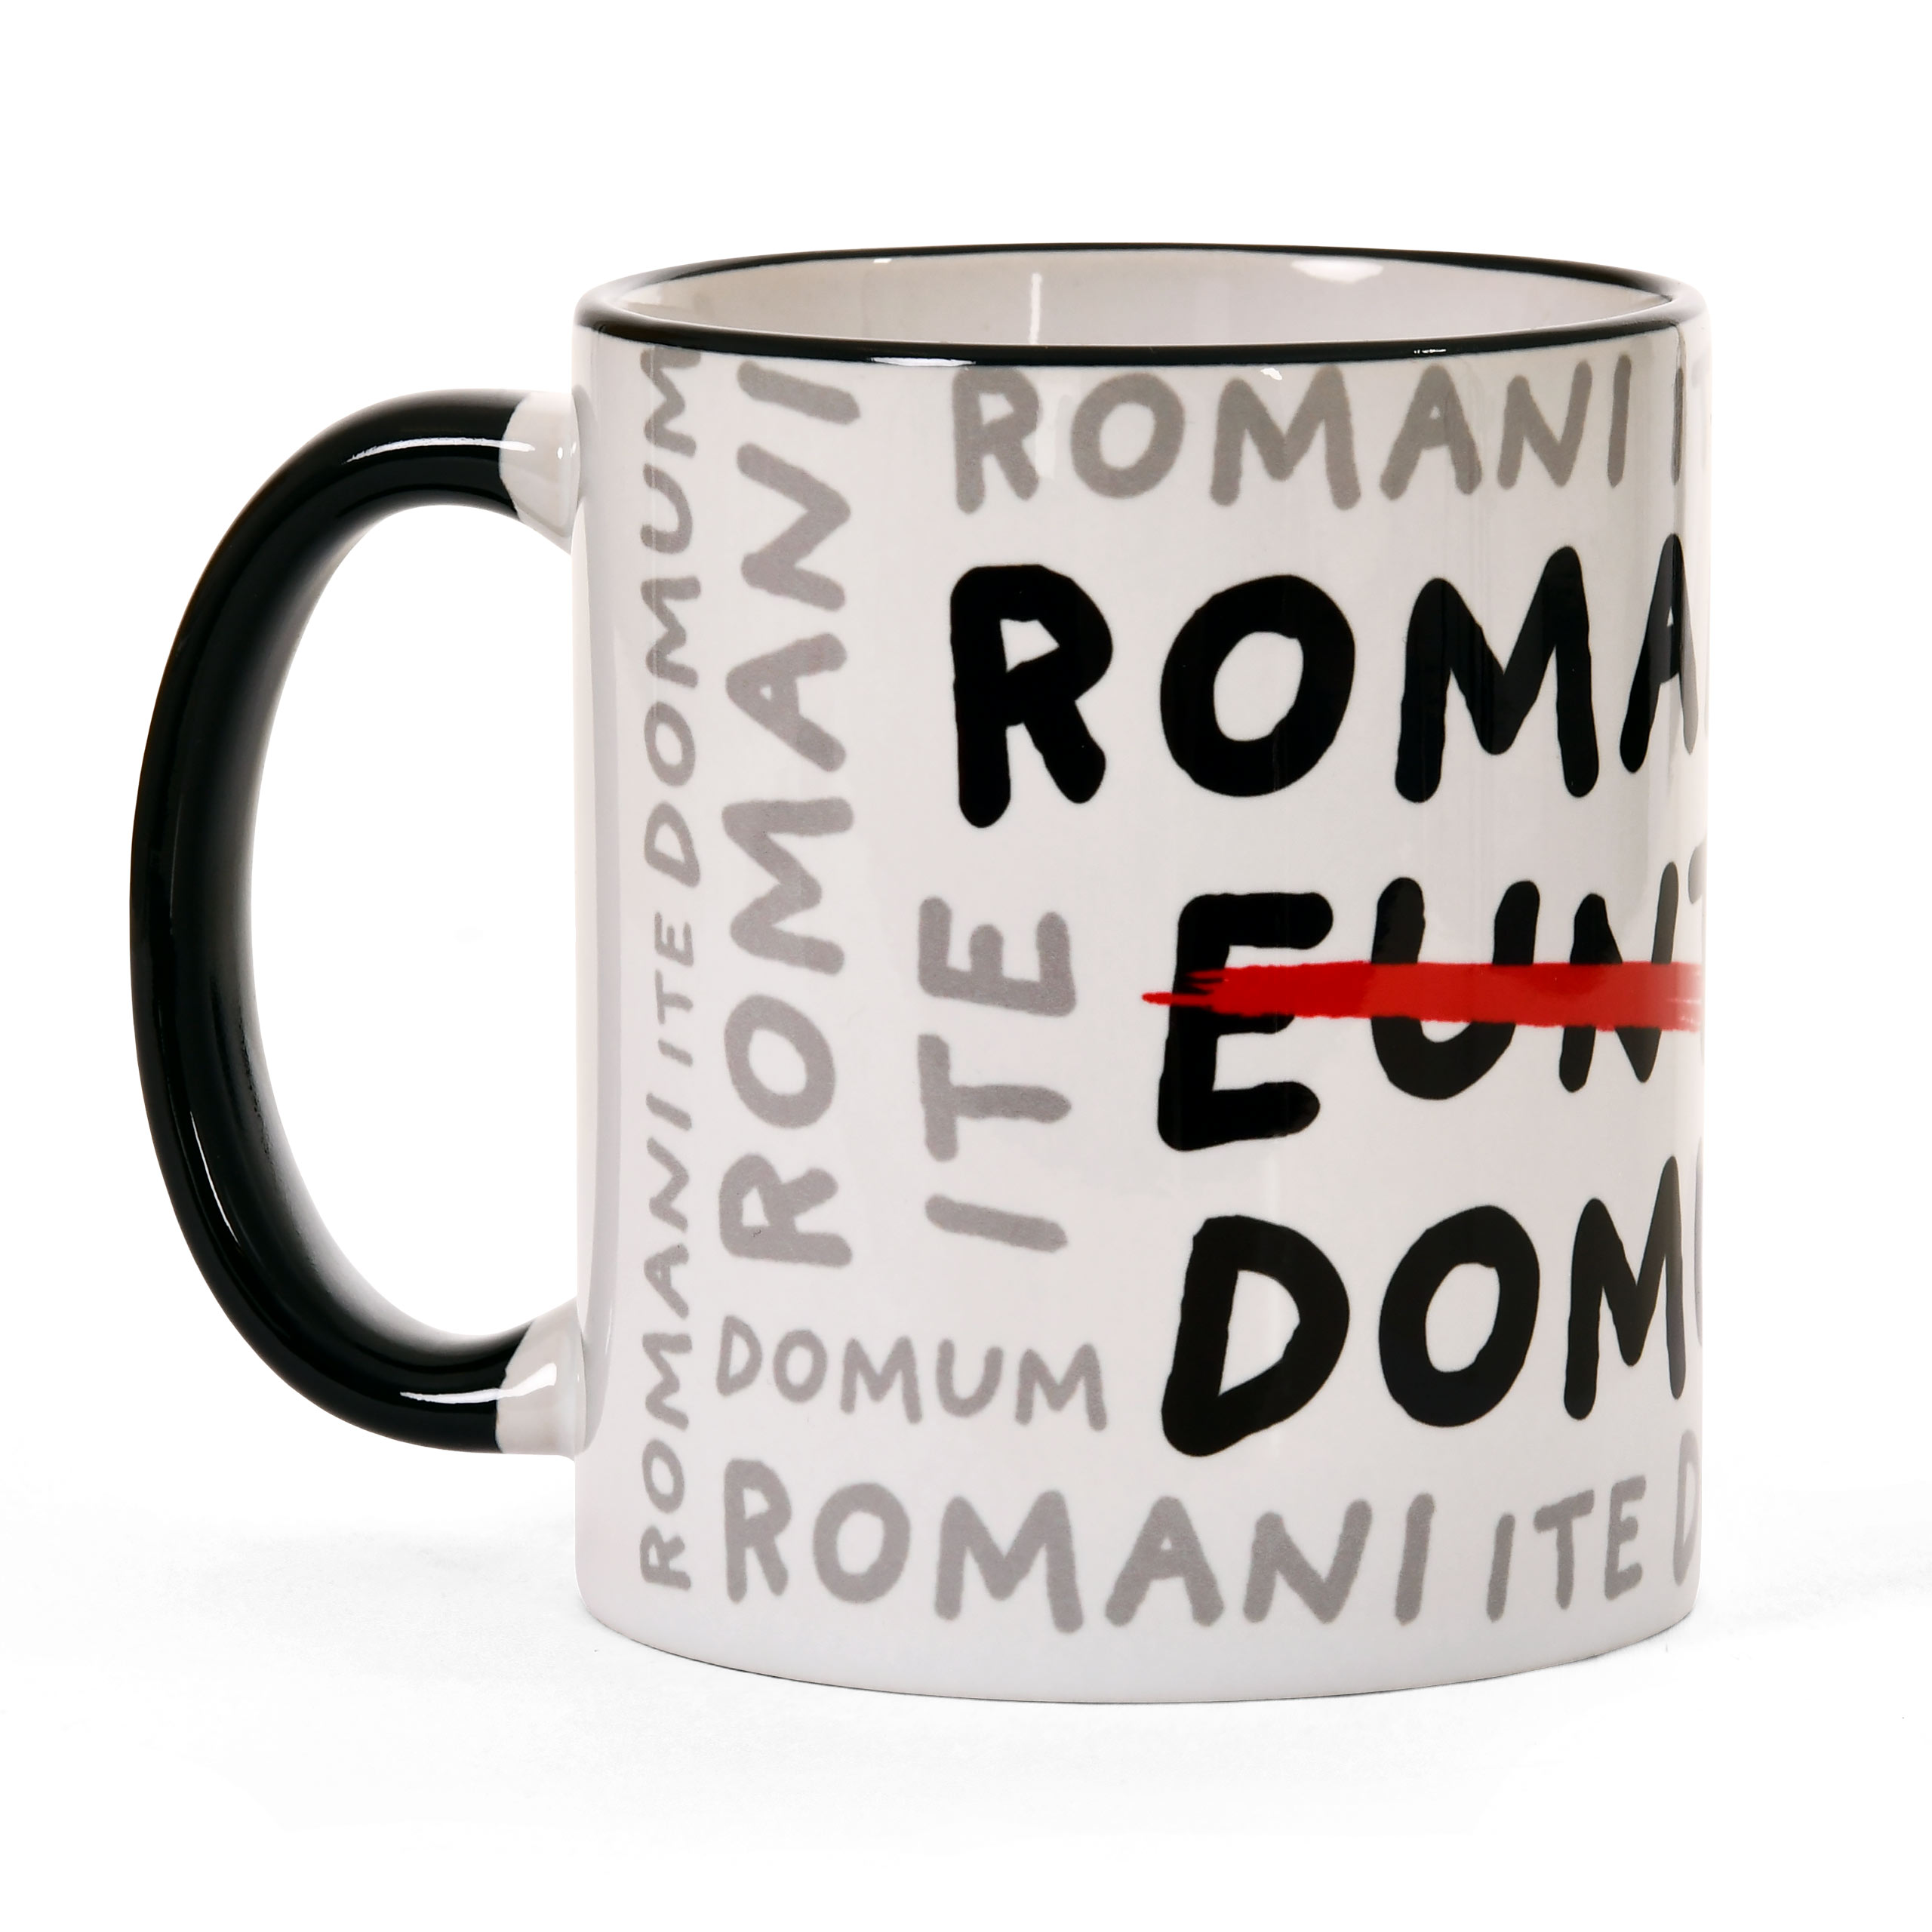 Romani Ite Domum Tasse für Monty Python Fans